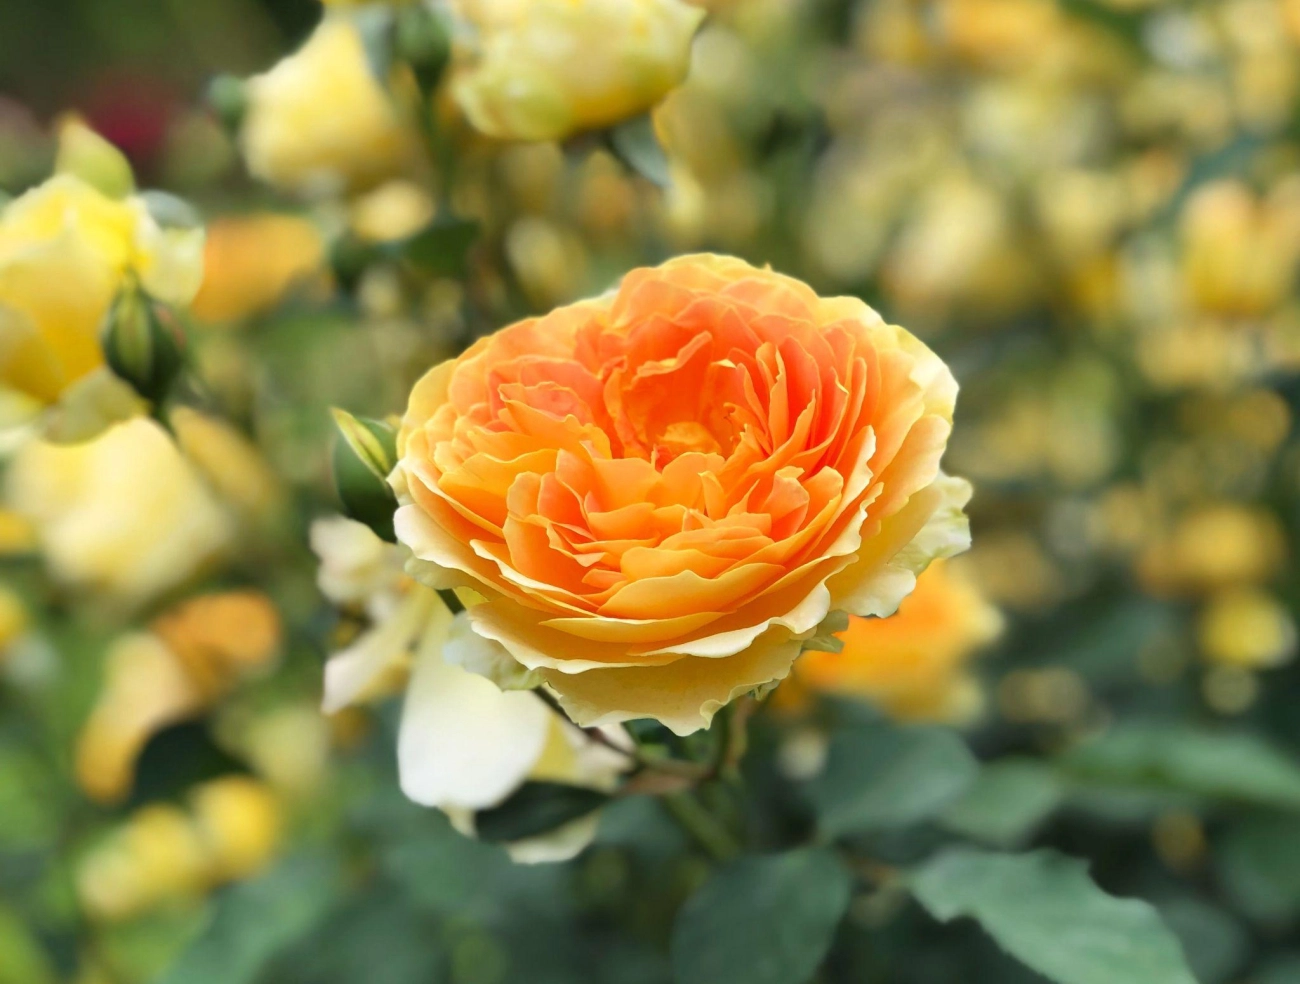 50 hình ảnh hoa hồng đẹp nhất và ý nghĩa theo màu sắc - 40